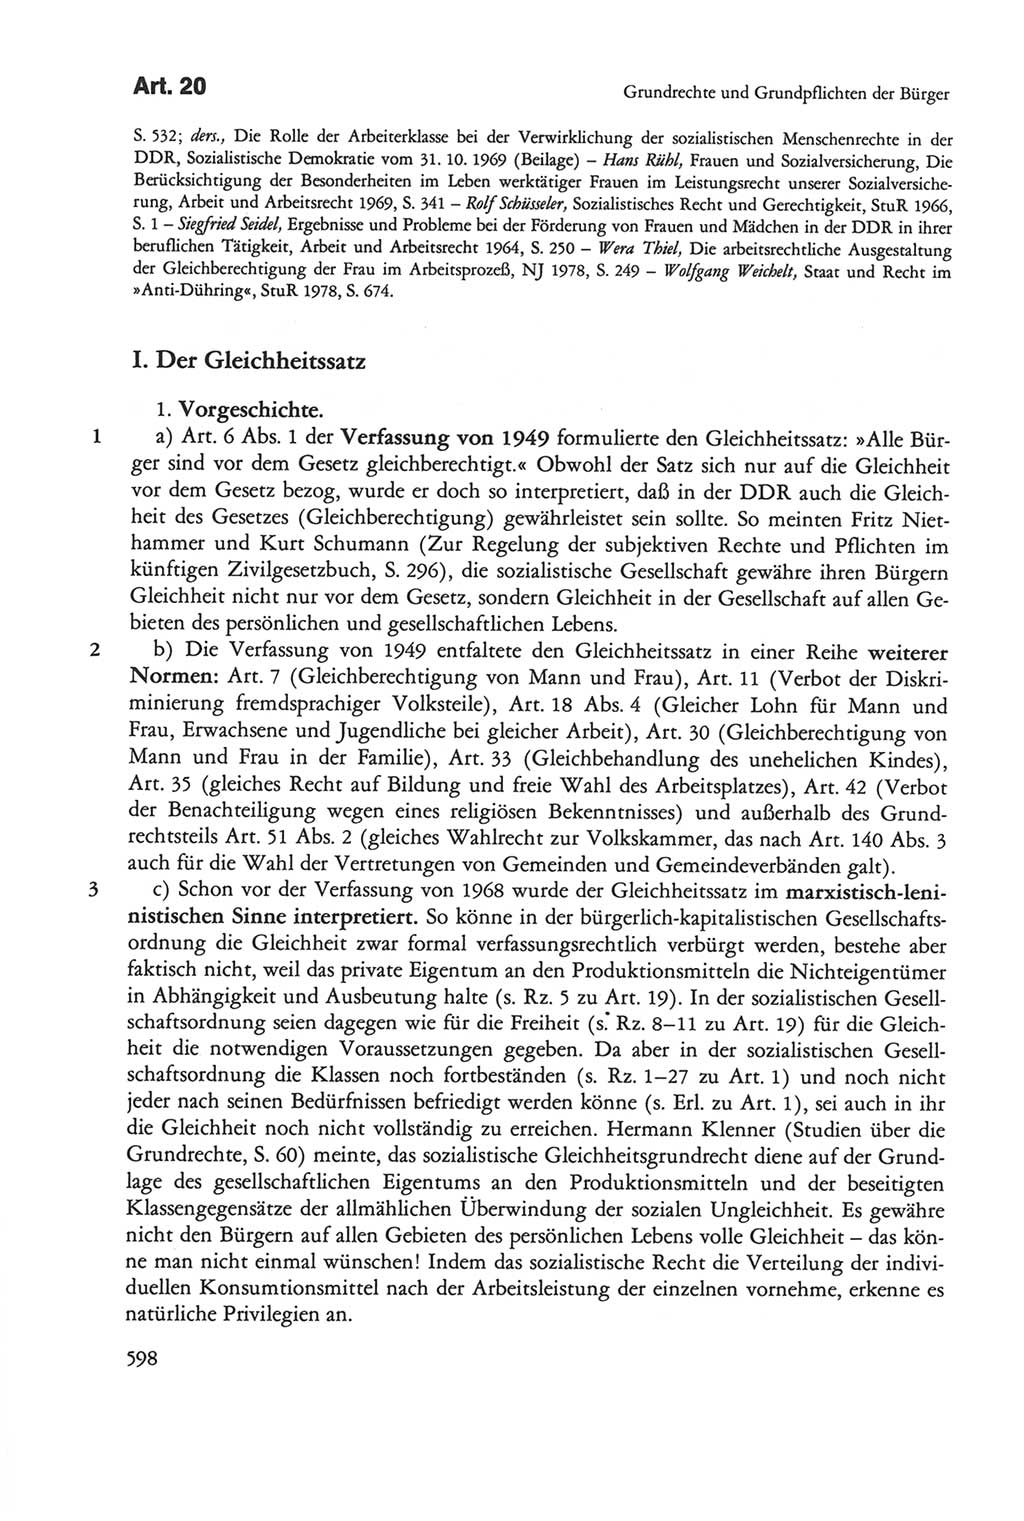 Die sozialistische Verfassung der Deutschen Demokratischen Republik (DDR), Kommentar 1982, Seite 598 (Soz. Verf. DDR Komm. 1982, S. 598)